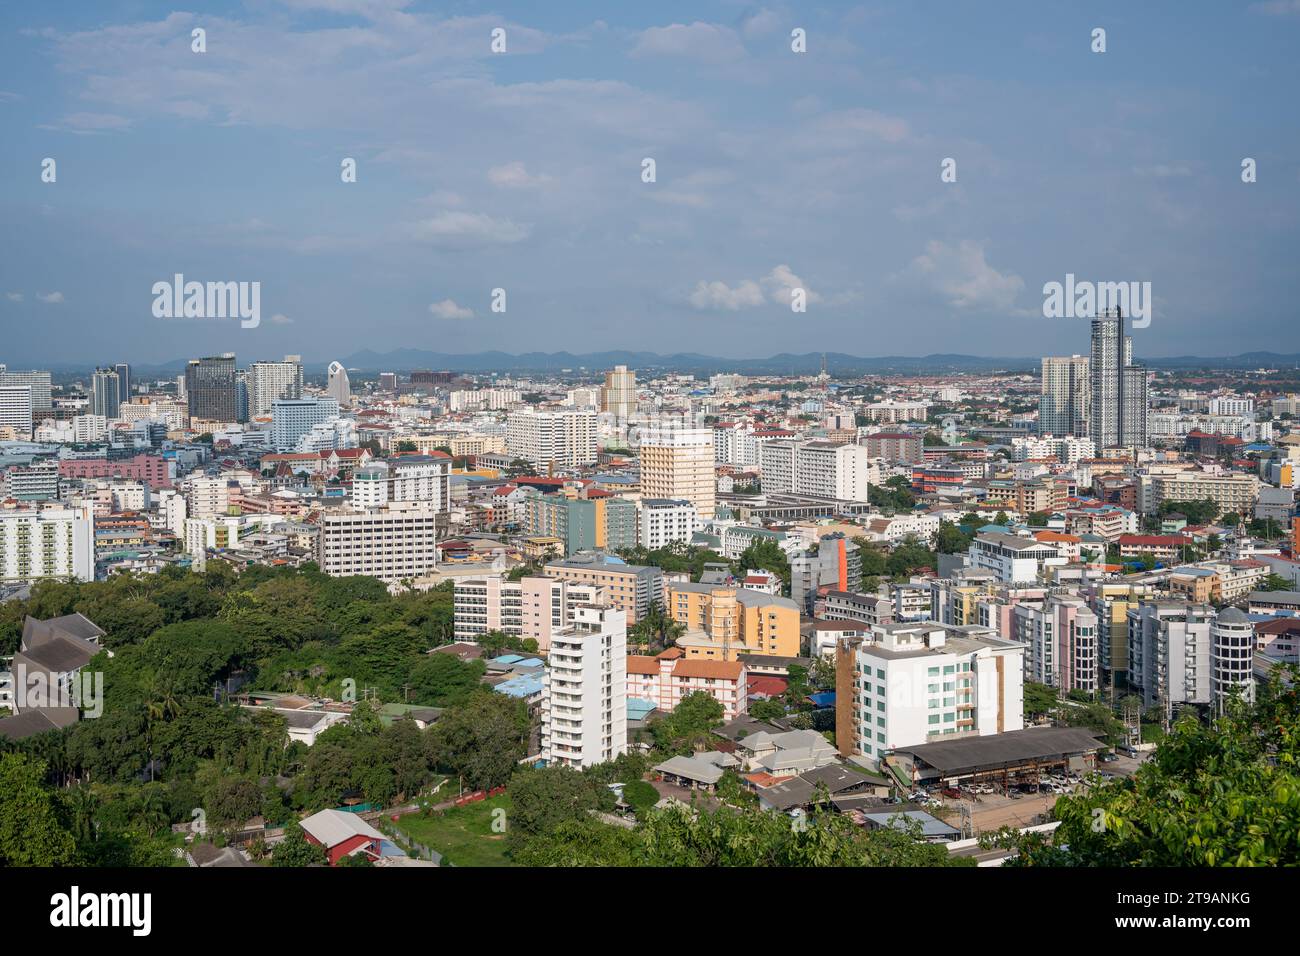 Il paesaggio urbano del distretto di Pattaya Chonburi in Thailandia nel sud-est asiatico Foto Stock